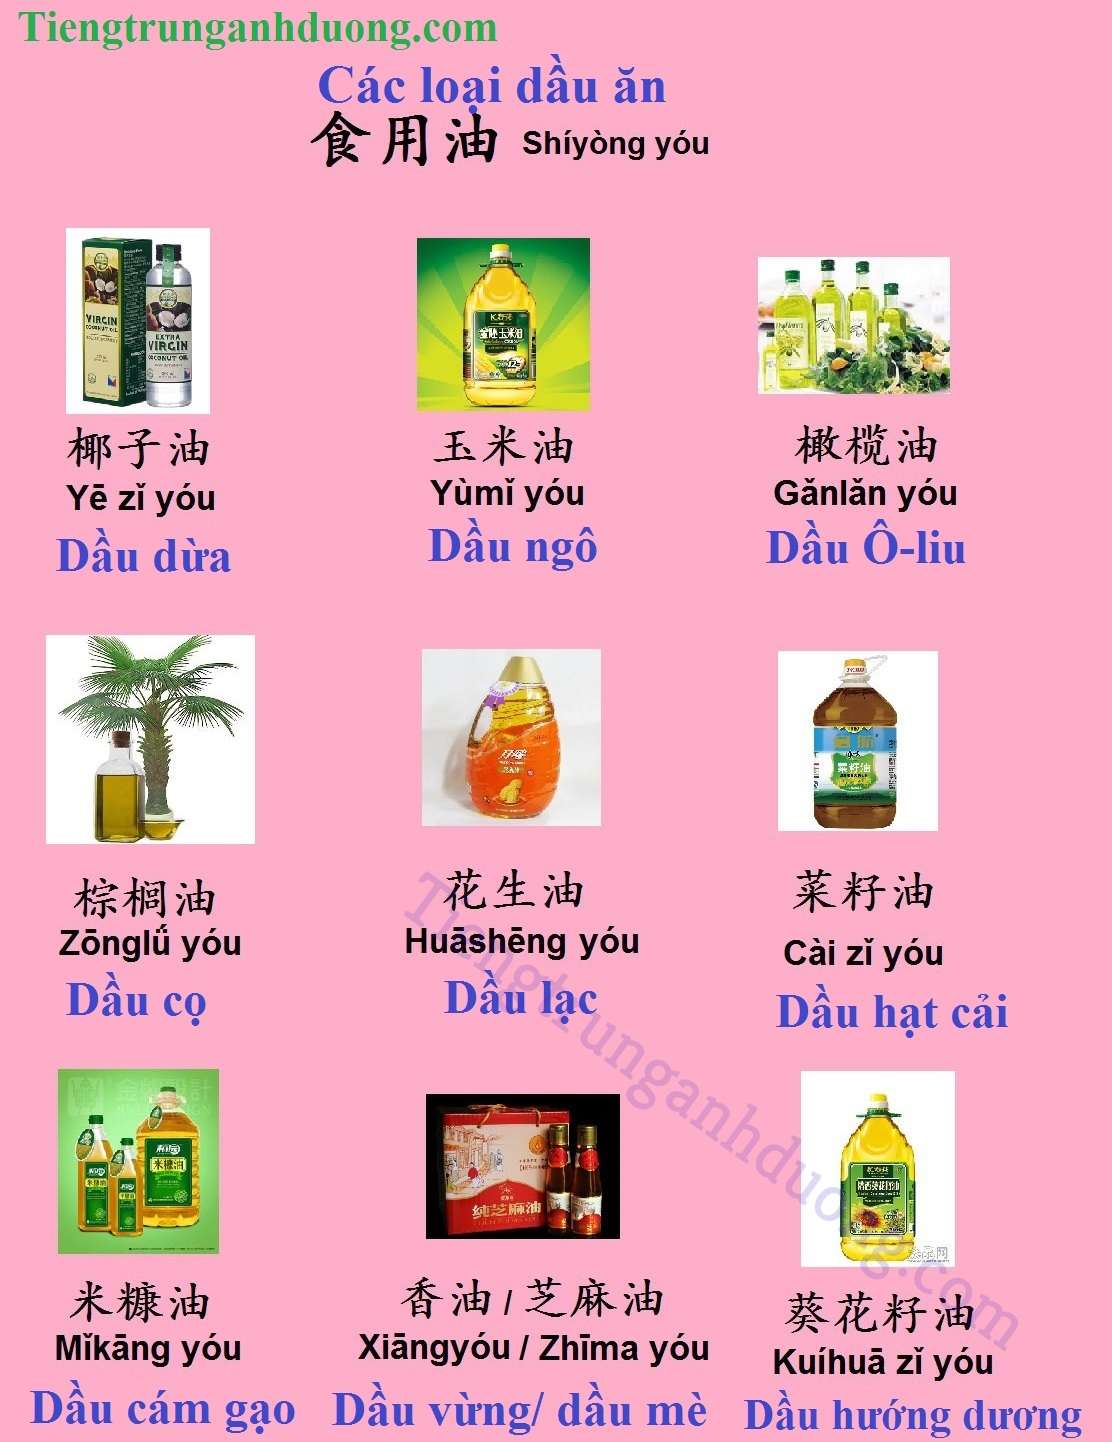 Các loại dầu ăn trong tiếng Trung